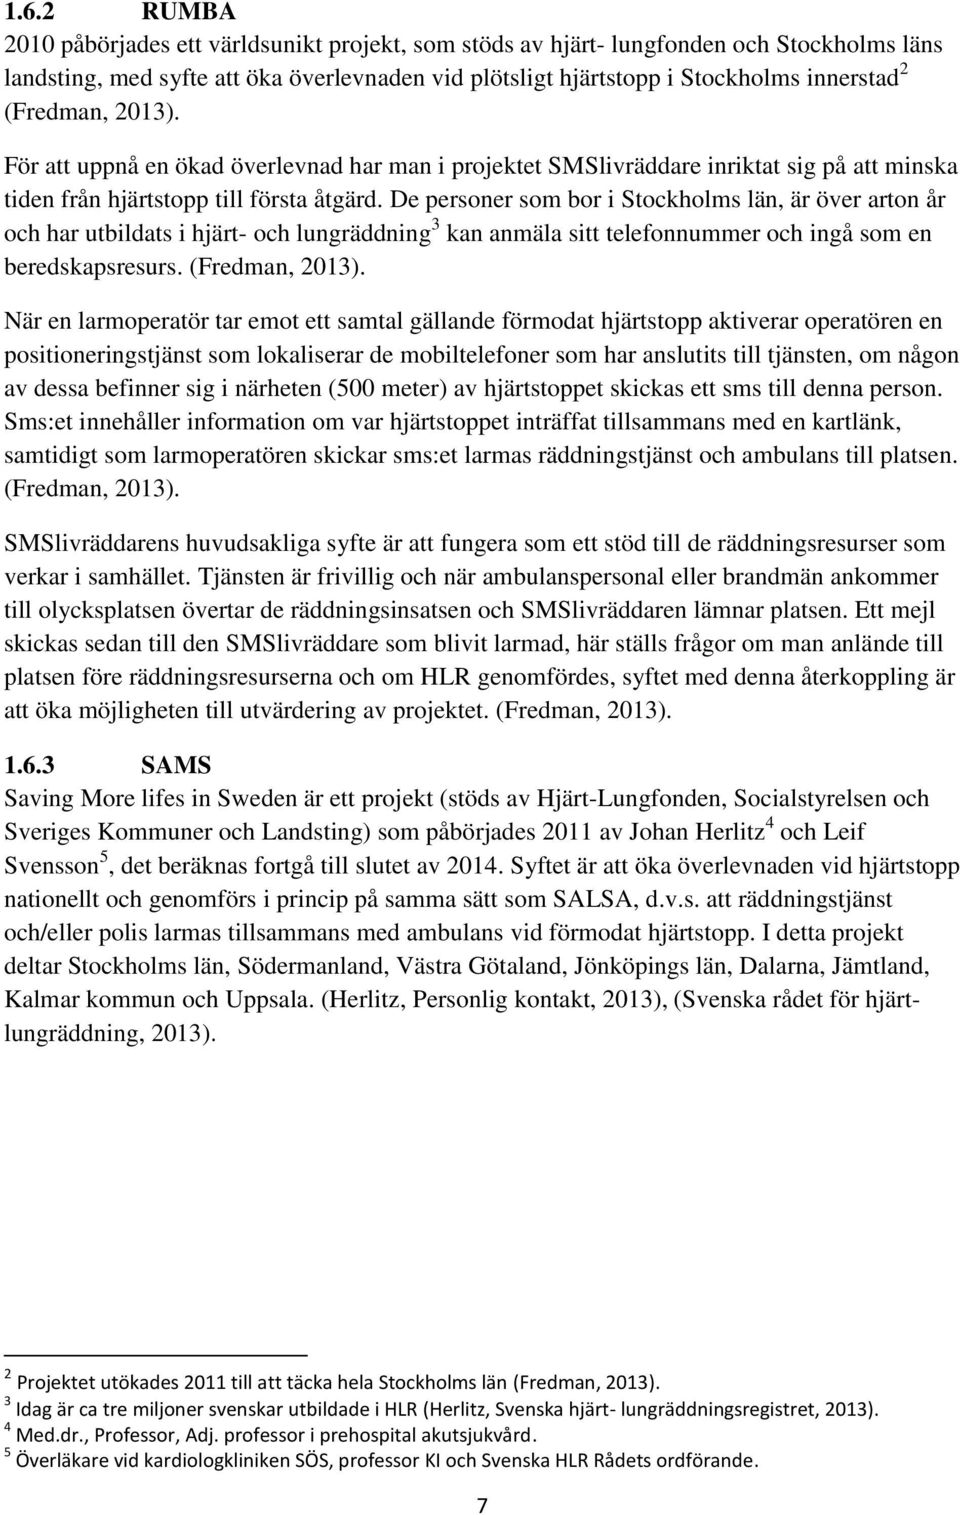 De personer som bor i Stockholms län, är över arton år och har utbildats i hjärt- och lungräddning 3 kan anmäla sitt telefonnummer och ingå som en beredskapsresurs. (Fredman, 2013).